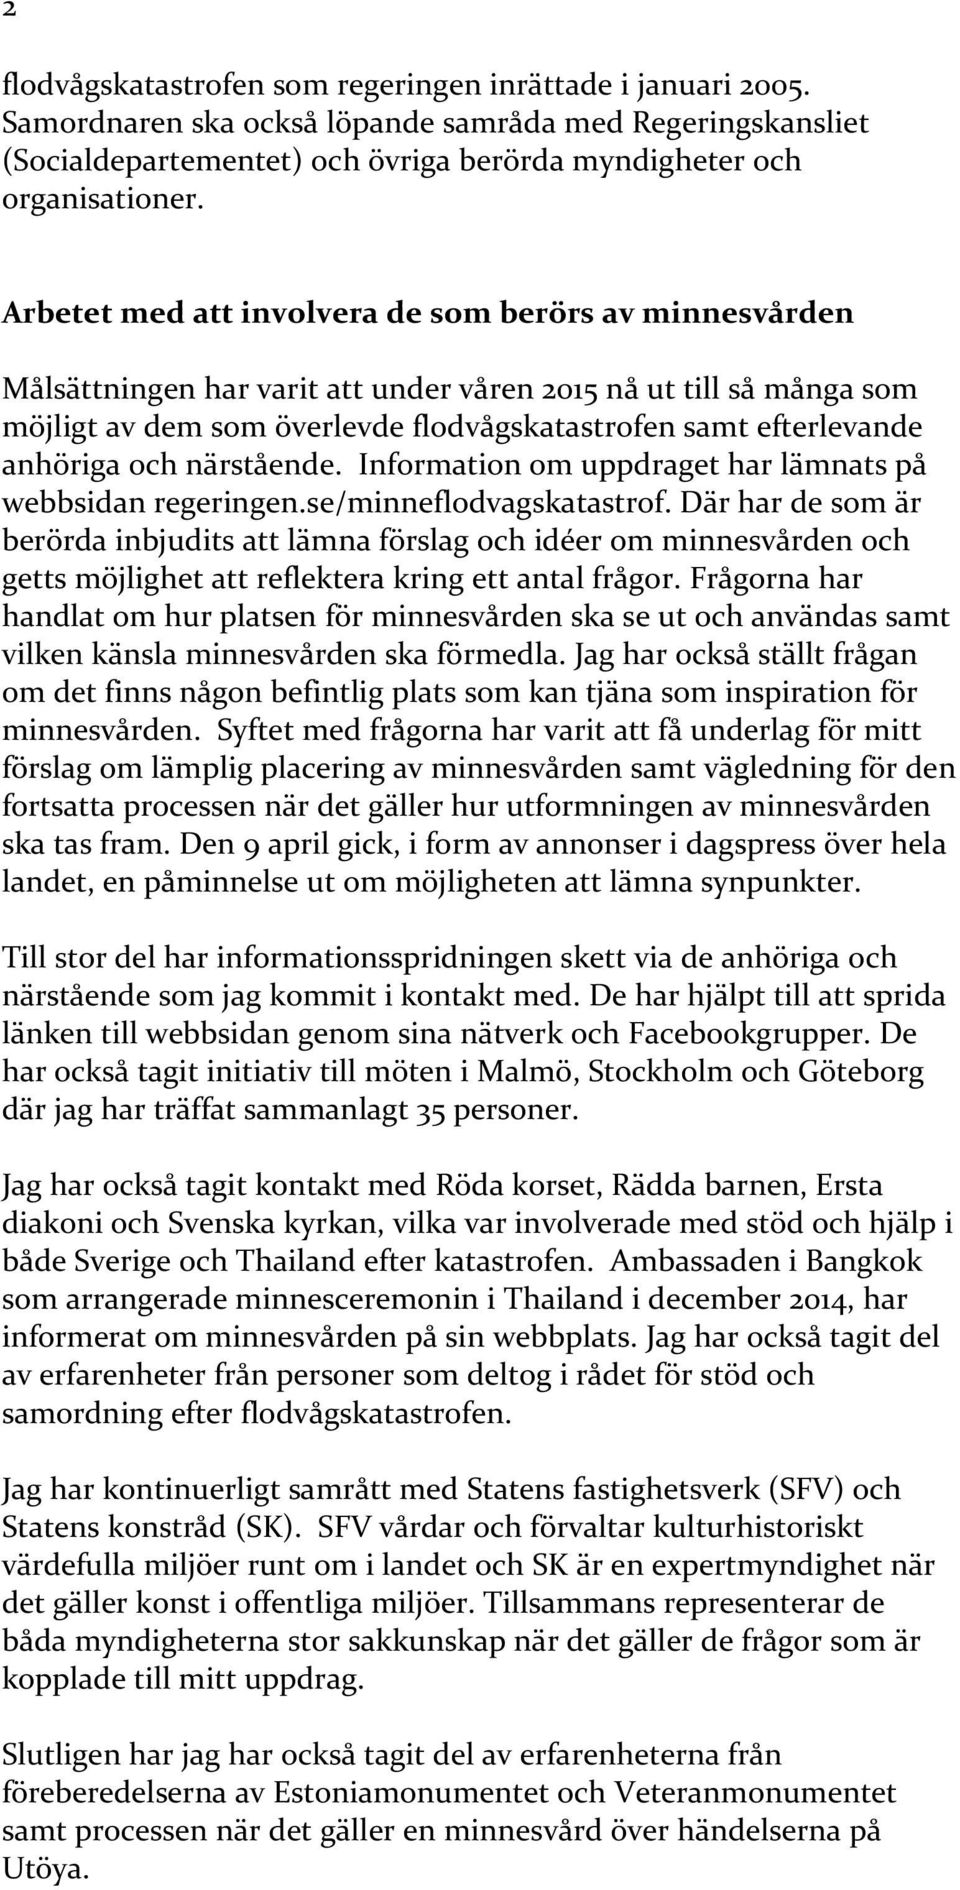 anhöriga och närstående. Information om uppdraget har lämnats på webbsidan regeringen.se/minneflodvagskatastrof.